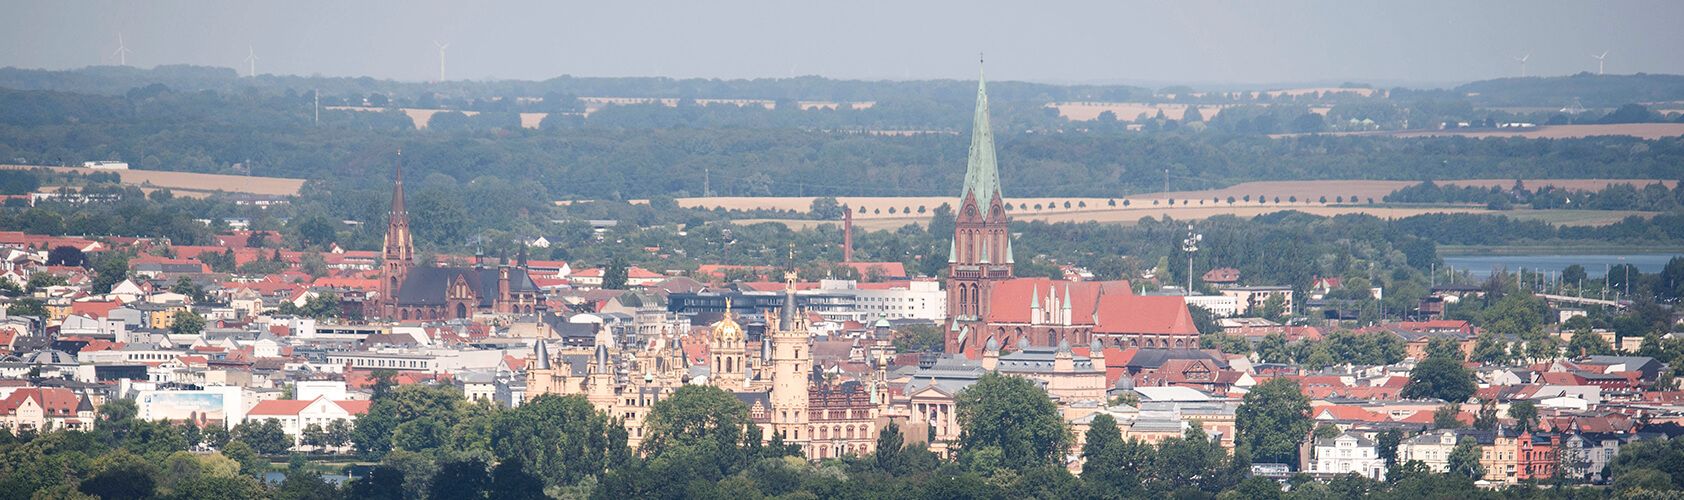 Deutsche Funkturm und Stadt Schwerin arbeiten beim Ausbau der Mobilfunkinfrastruktur in Schwerin zusammen